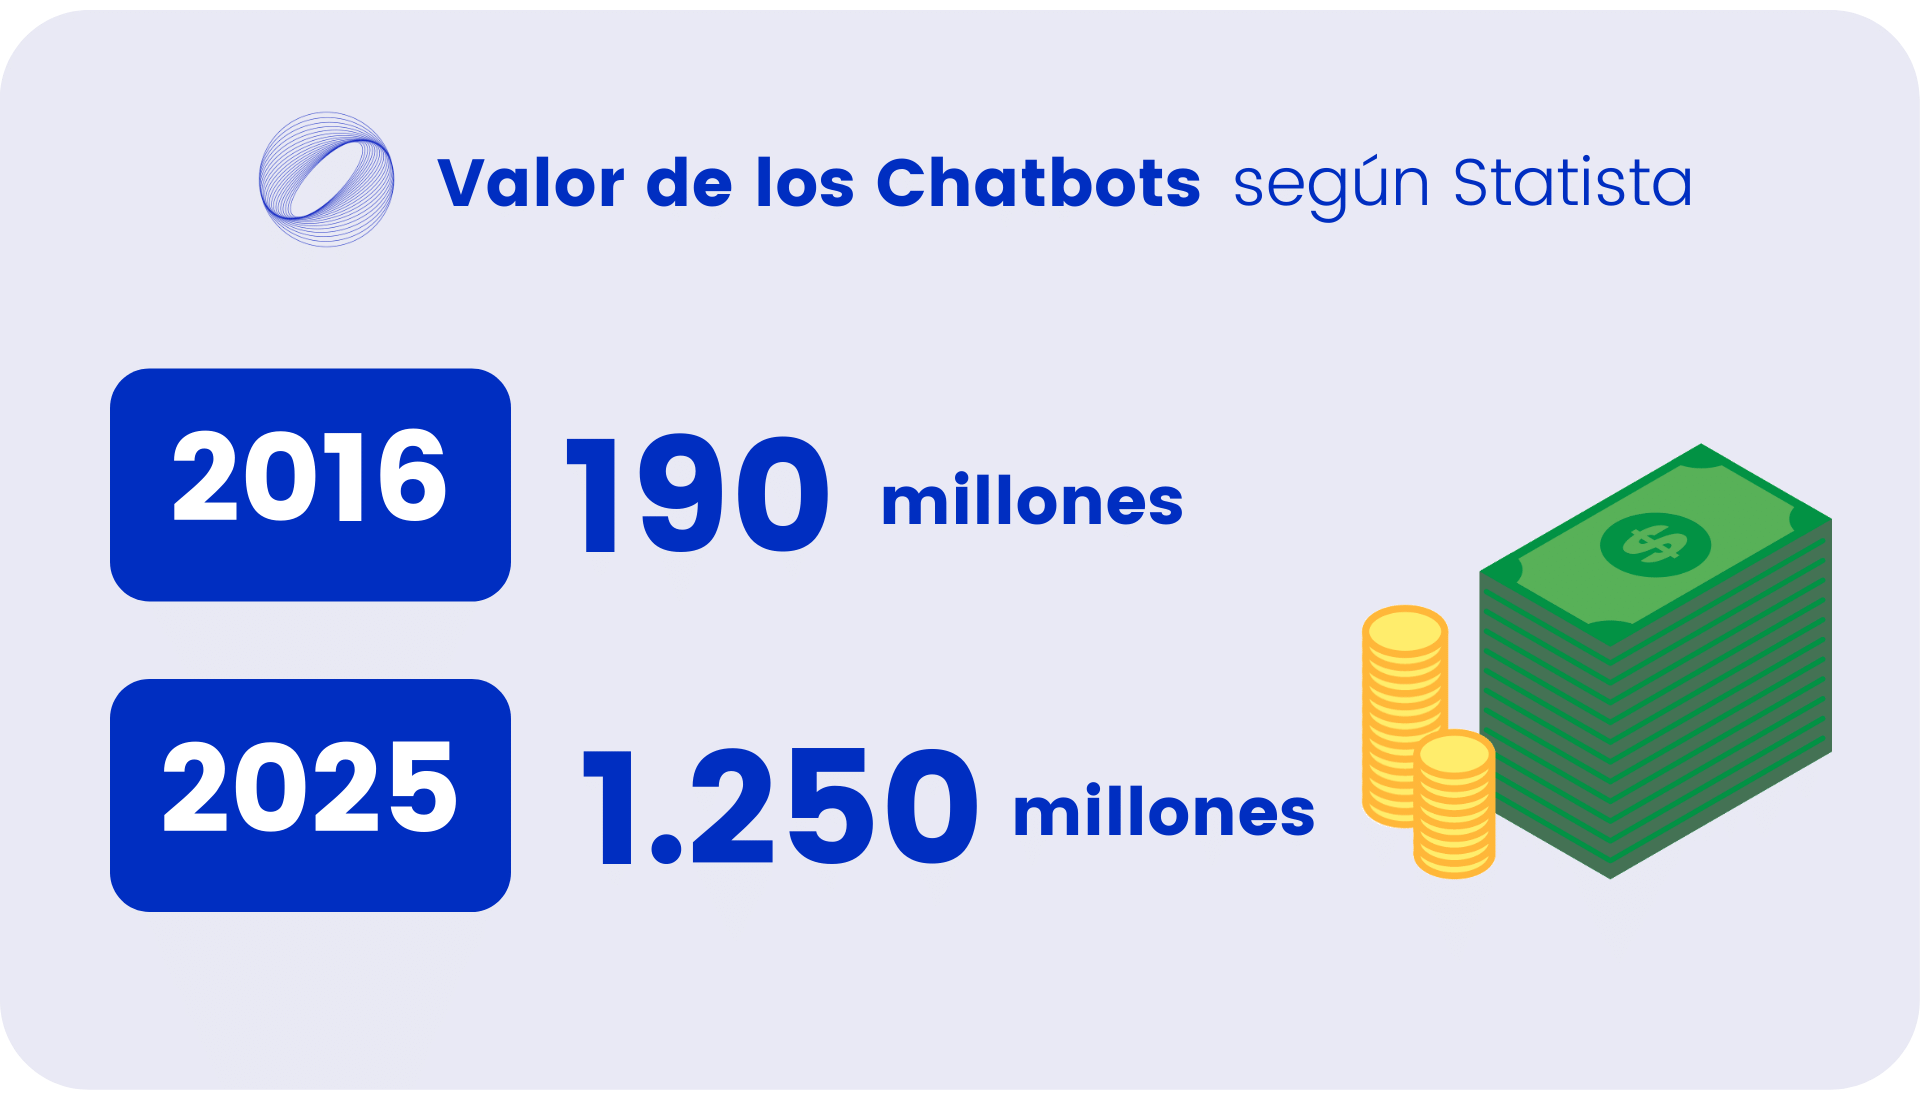 Valor de los Chatbots 